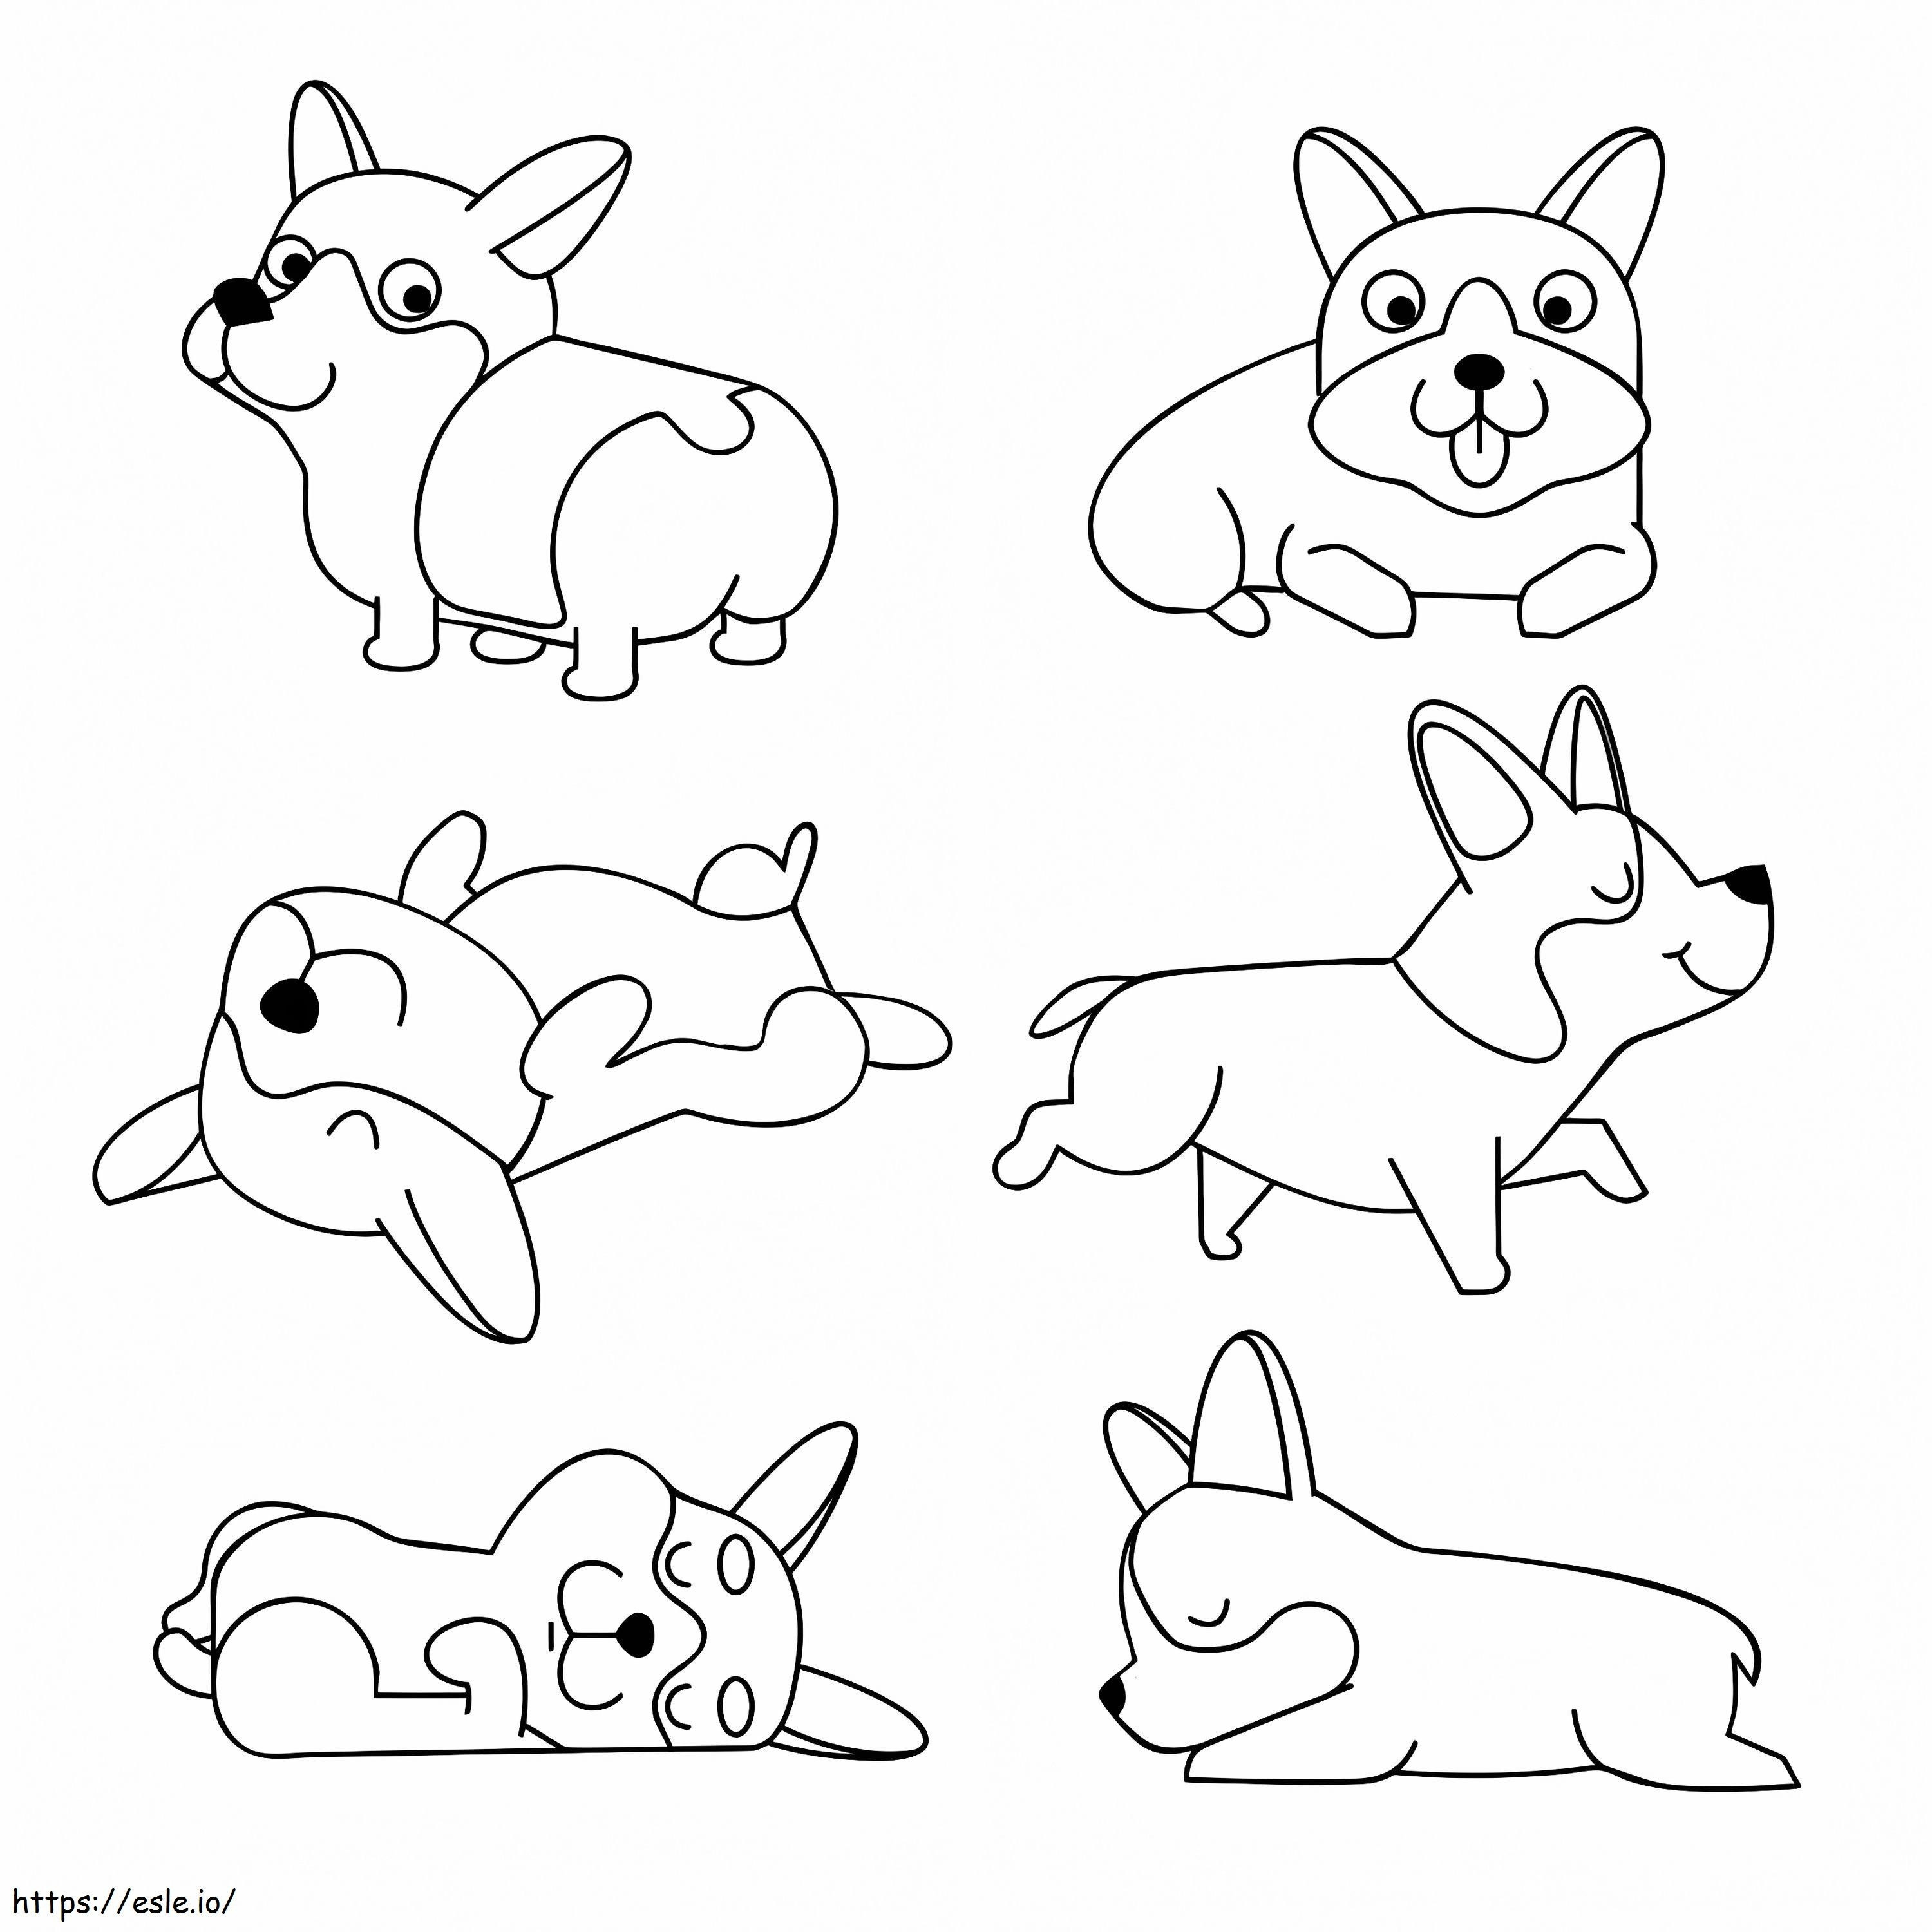 Corgi Dogs coloring page